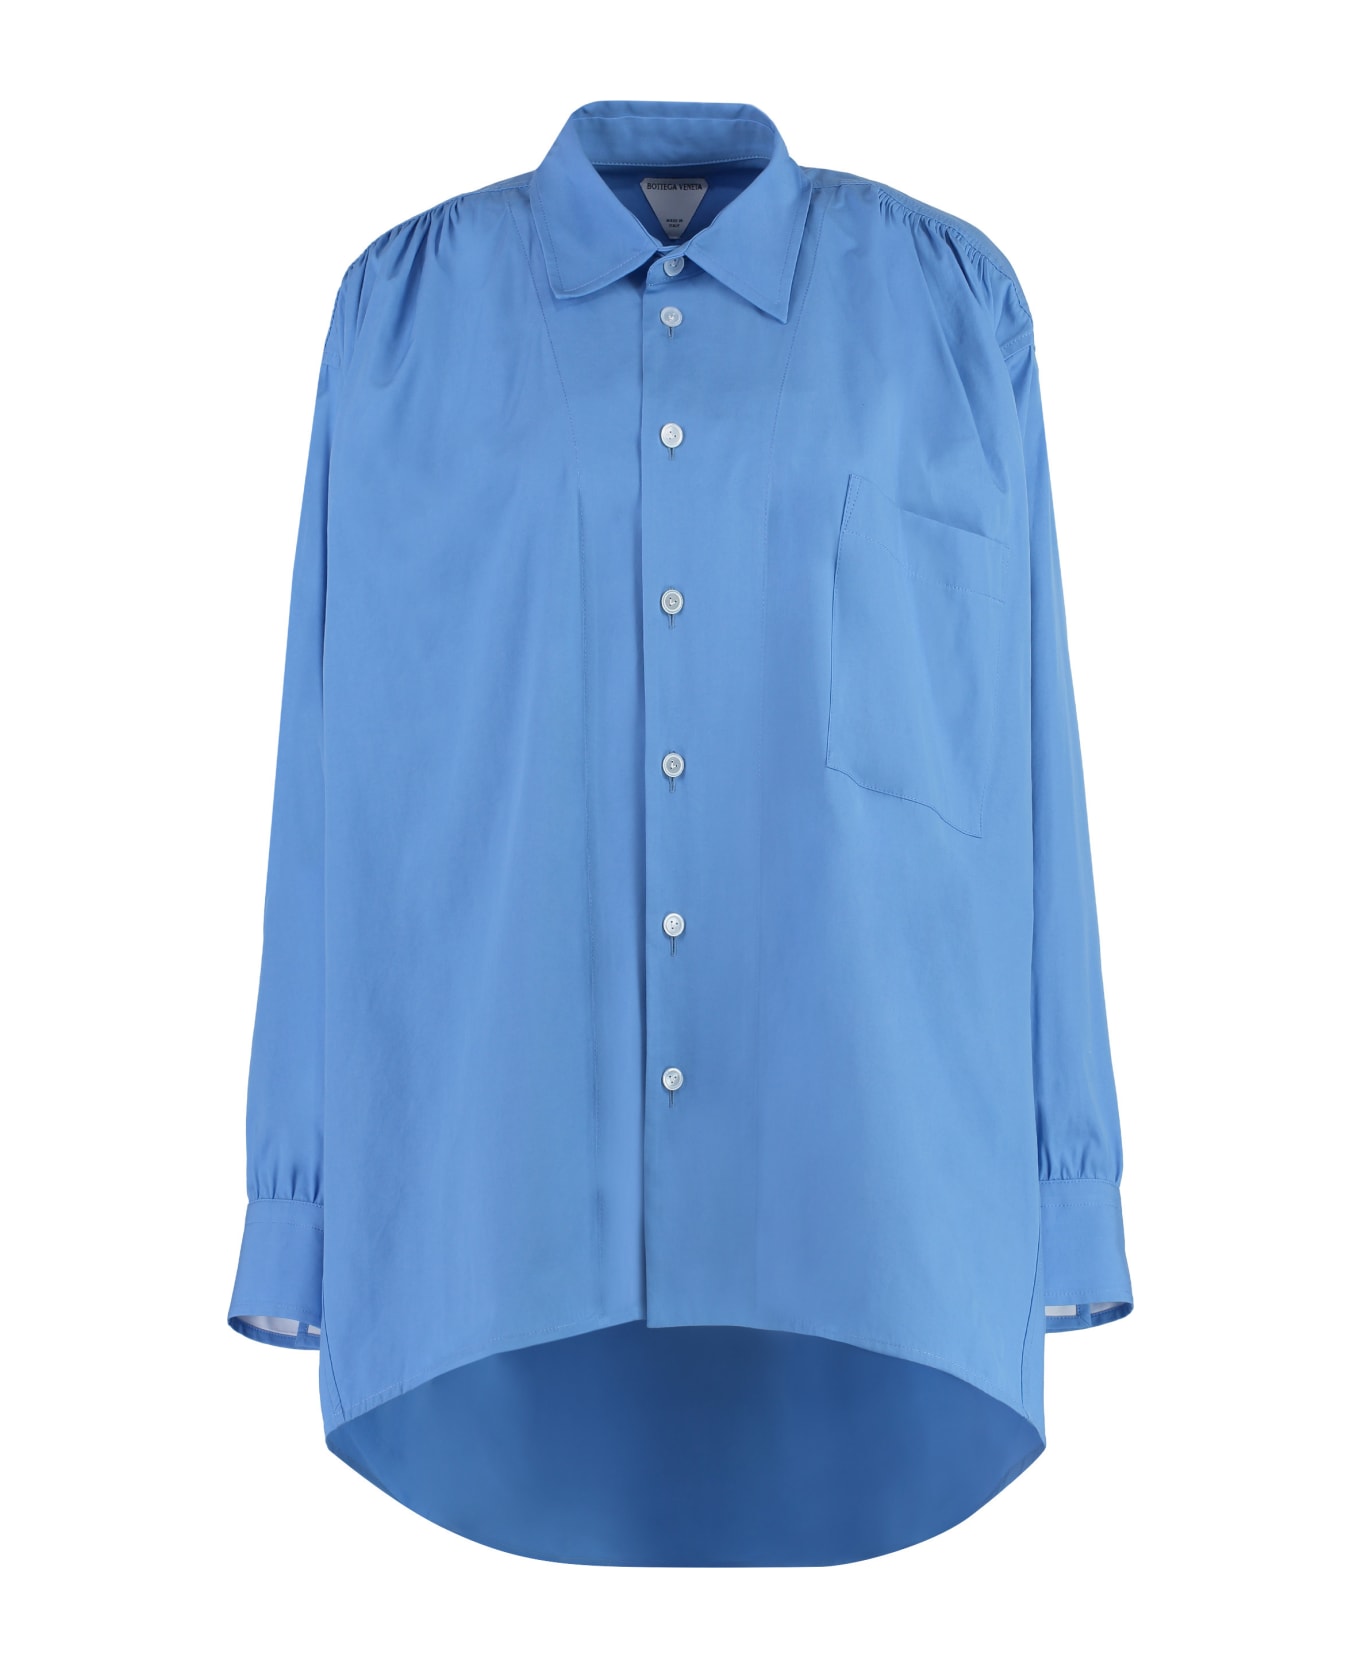 Bottega Veneta Cotton Shirt - Light Blue シャツ